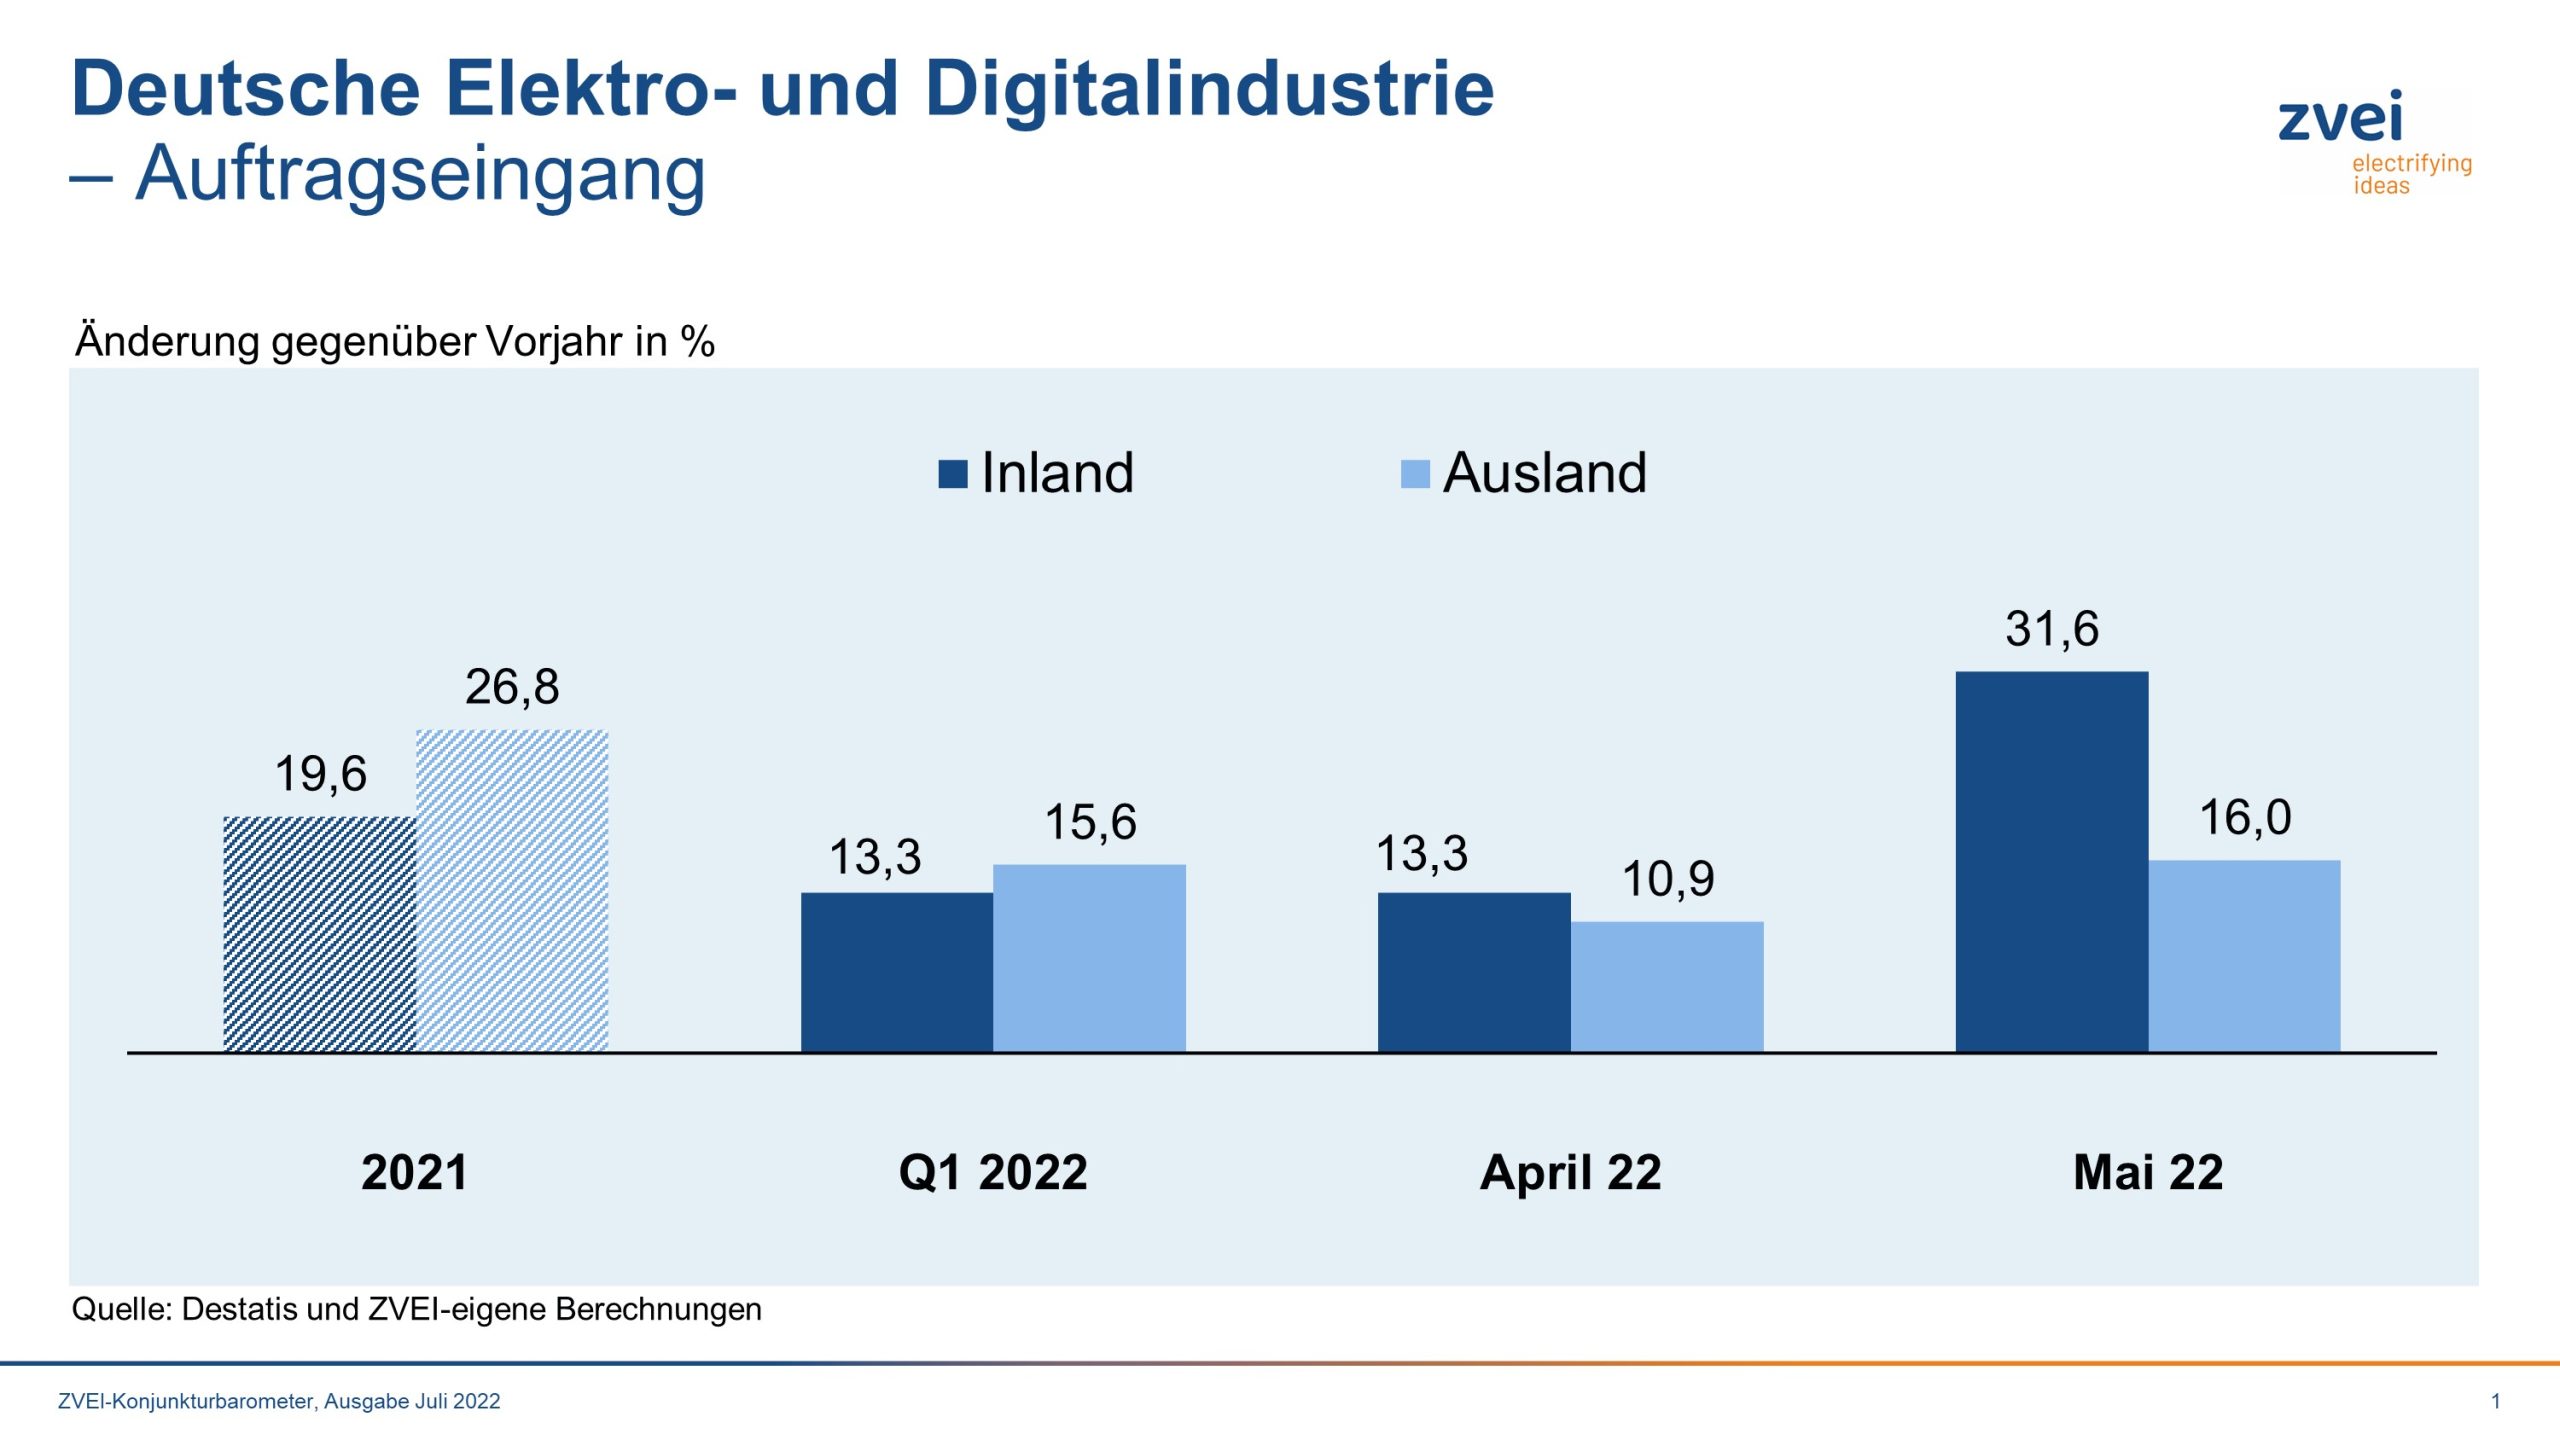 Erneutes Auftragsplus für die deutsche Elektro- und Digitalindustrie